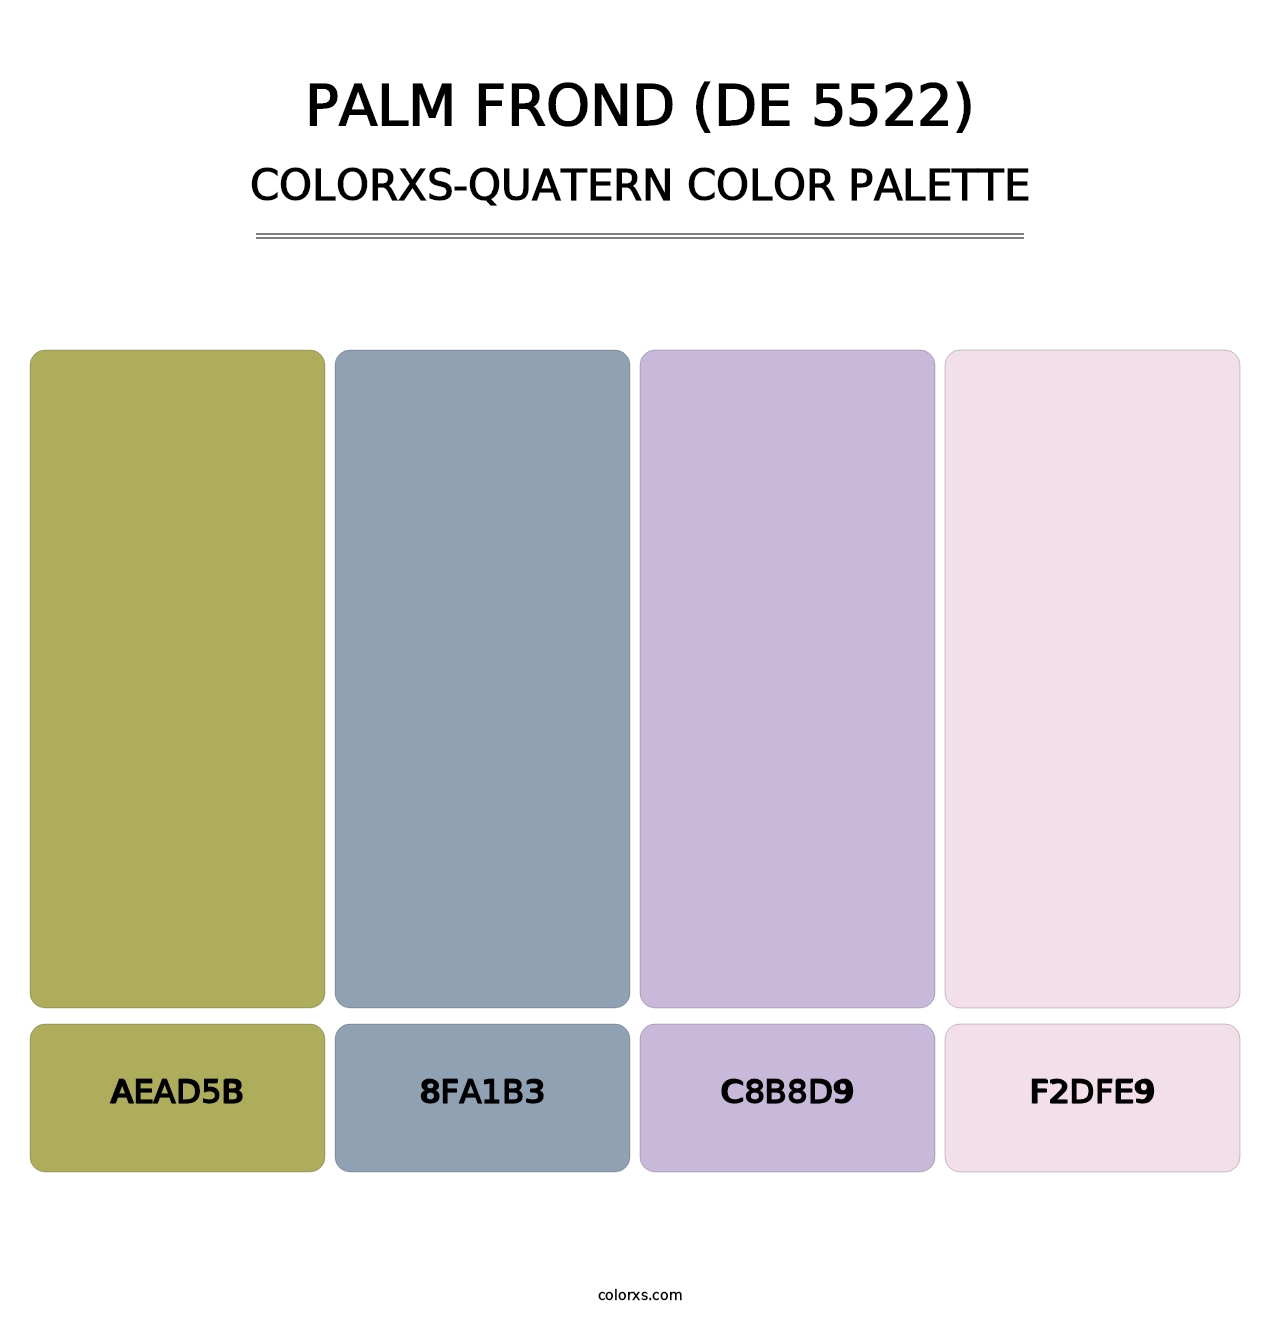 Palm Frond (DE 5522) - Colorxs Quatern Palette